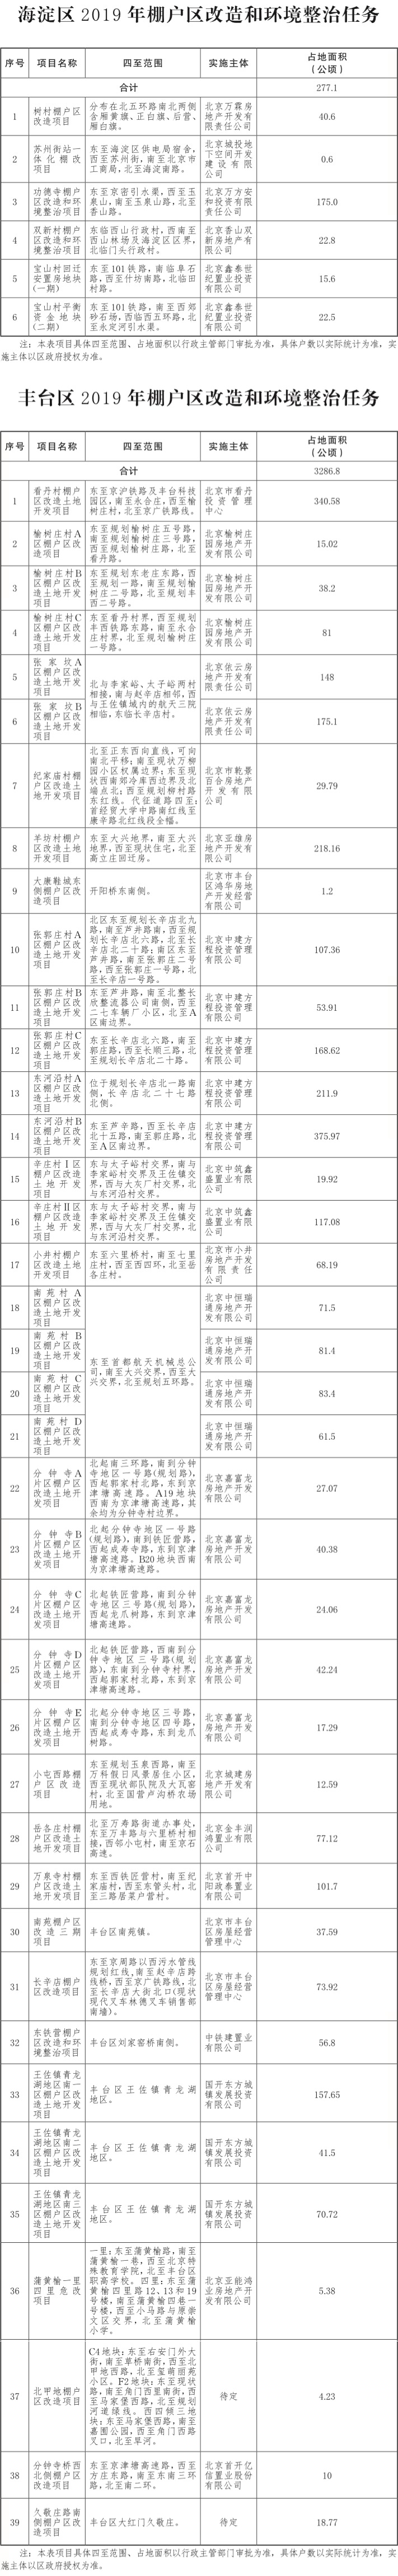 17-北京市2019年棚户区改造和环境整治任务-002.jpg